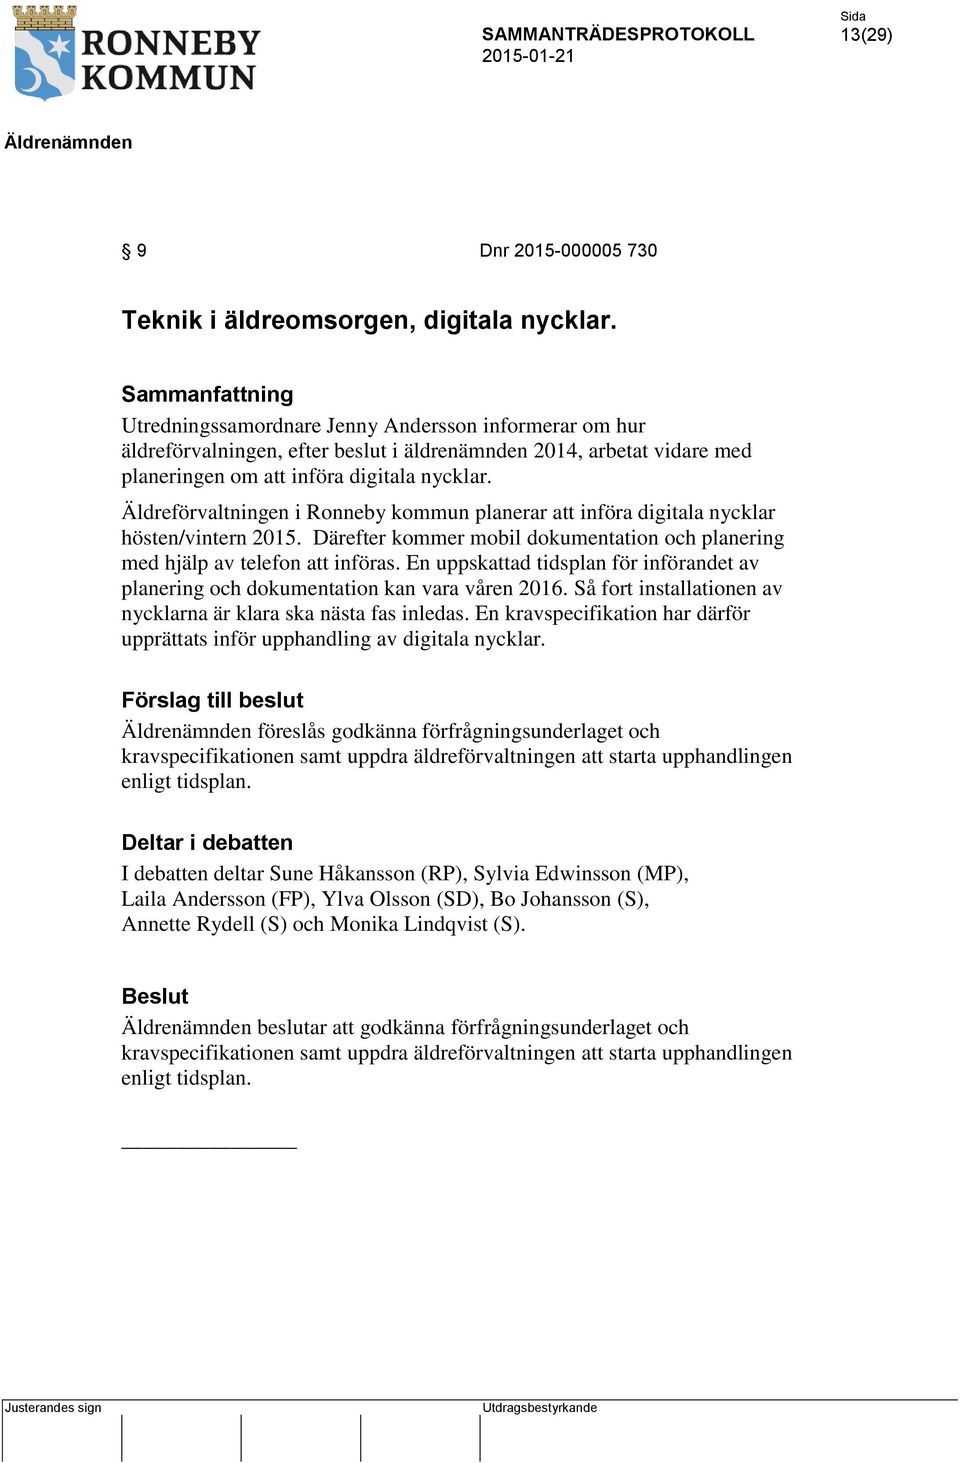 Äldreförvaltningen i Ronneby kommun planerar att införa digitala nycklar hösten/vintern 2015. Därefter kommer mobil dokumentation och planering med hjälp av telefon att införas.